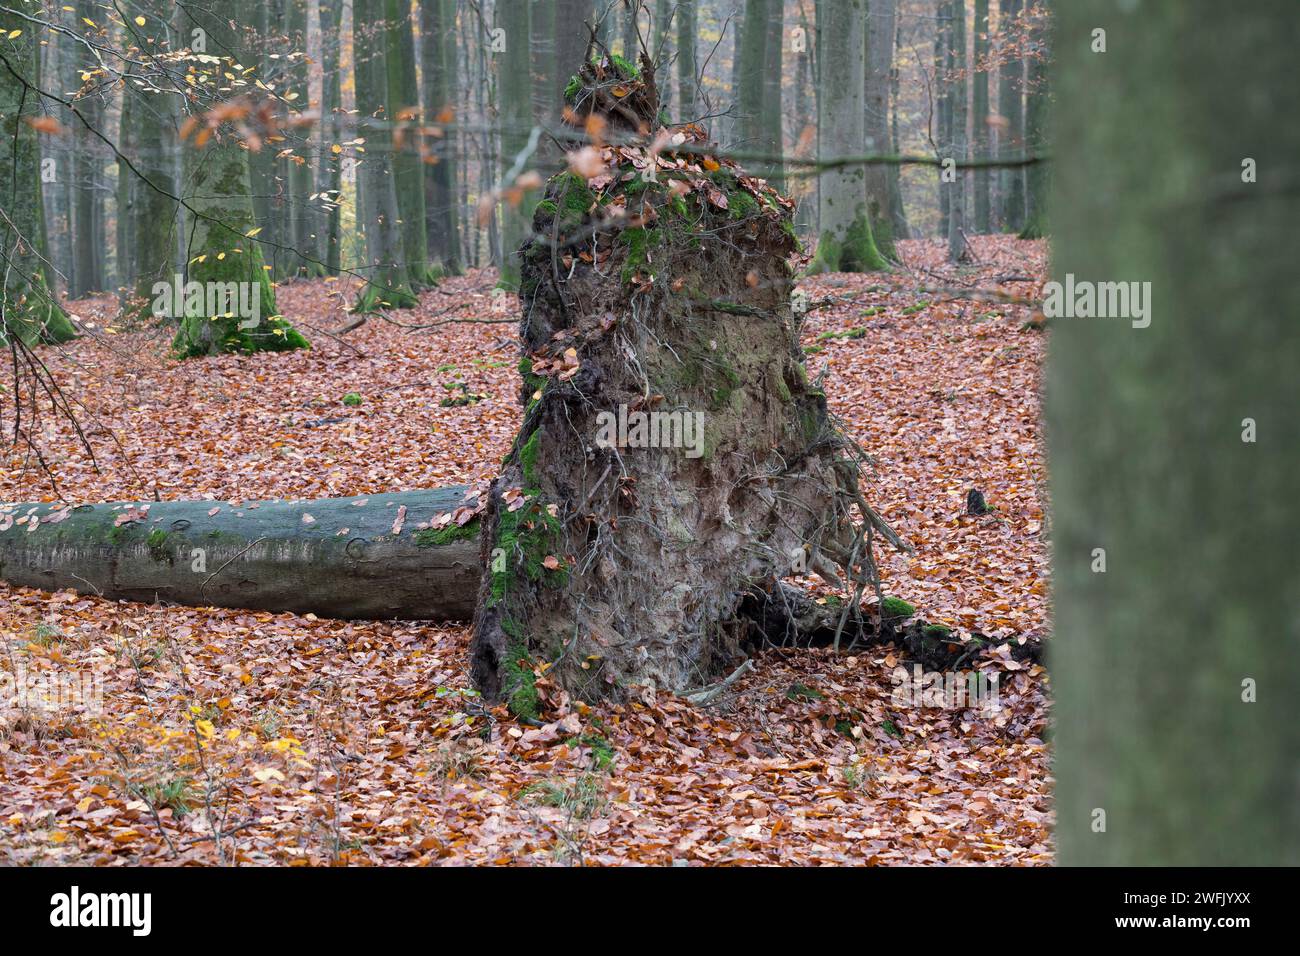 Wurzelteller einer buche, umgestürtzter Baum in einem Wald, Laubwald Foto Stock